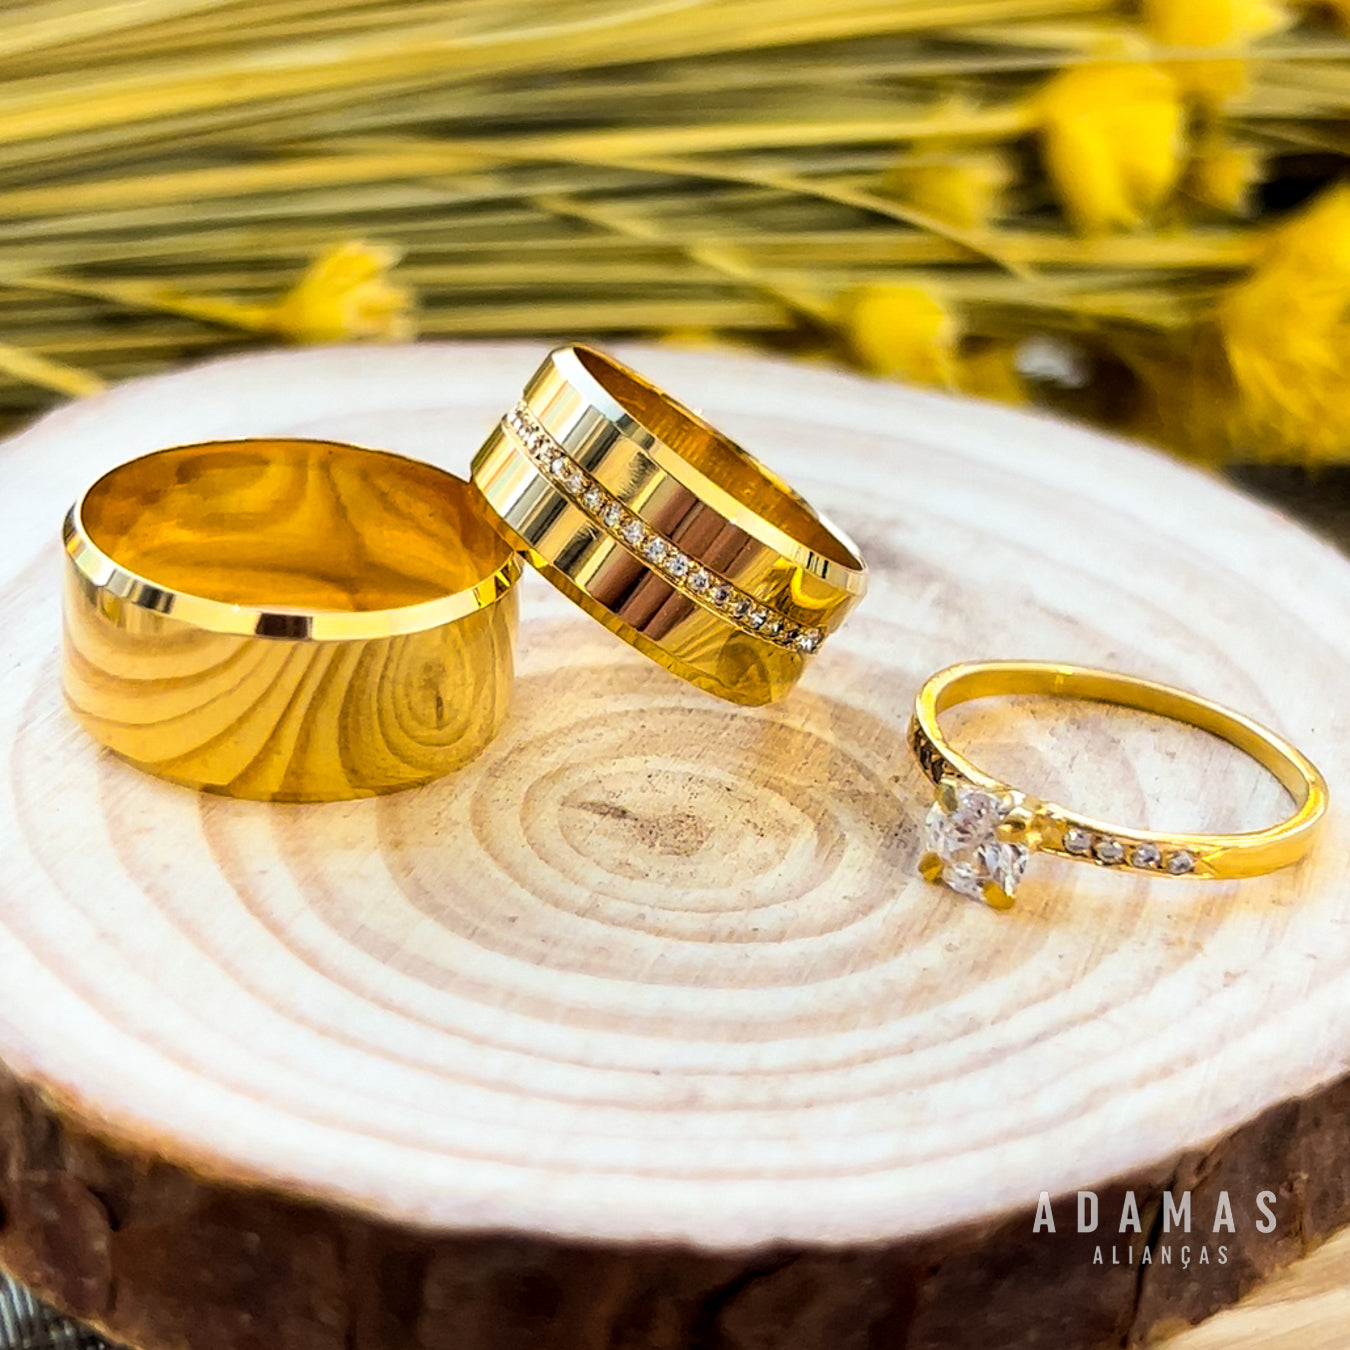 Aliança em Ouro 18k - Modelo Ipiranga – Adamas Alianças